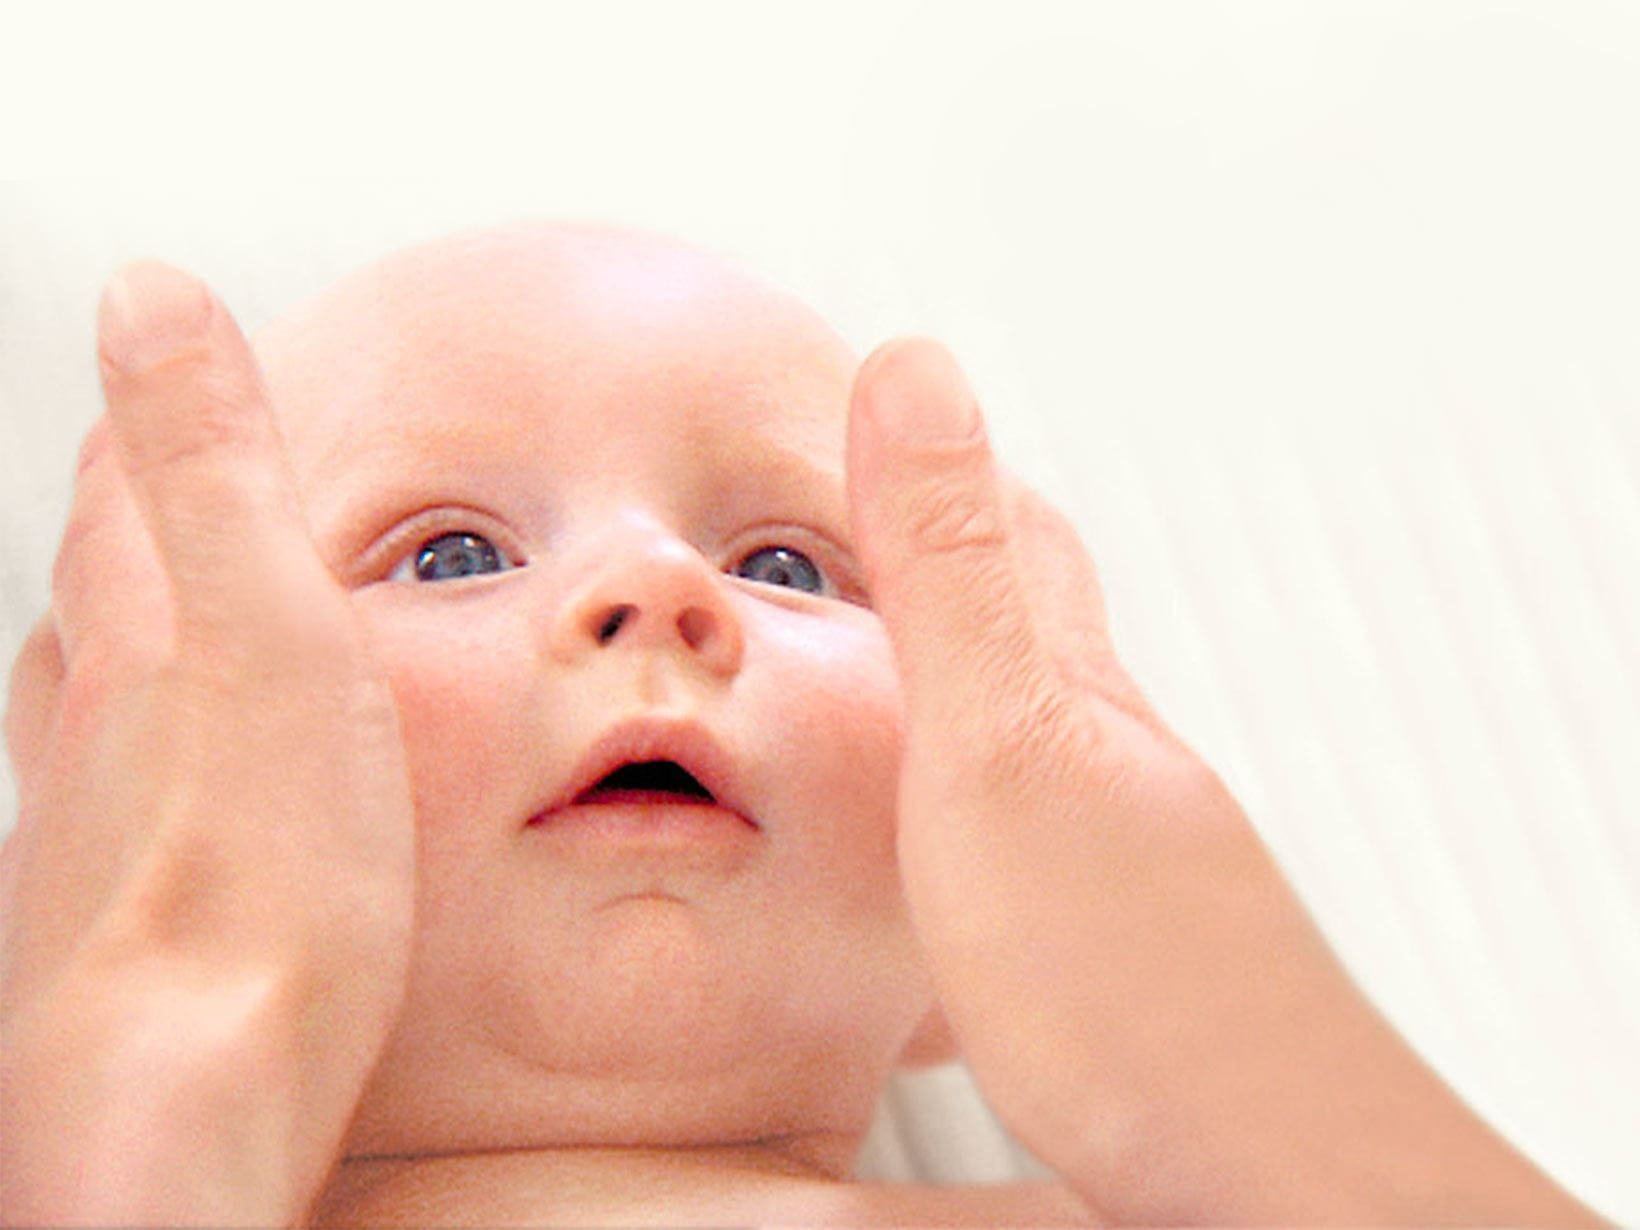 pelle del viso del neonato secca e screpolata